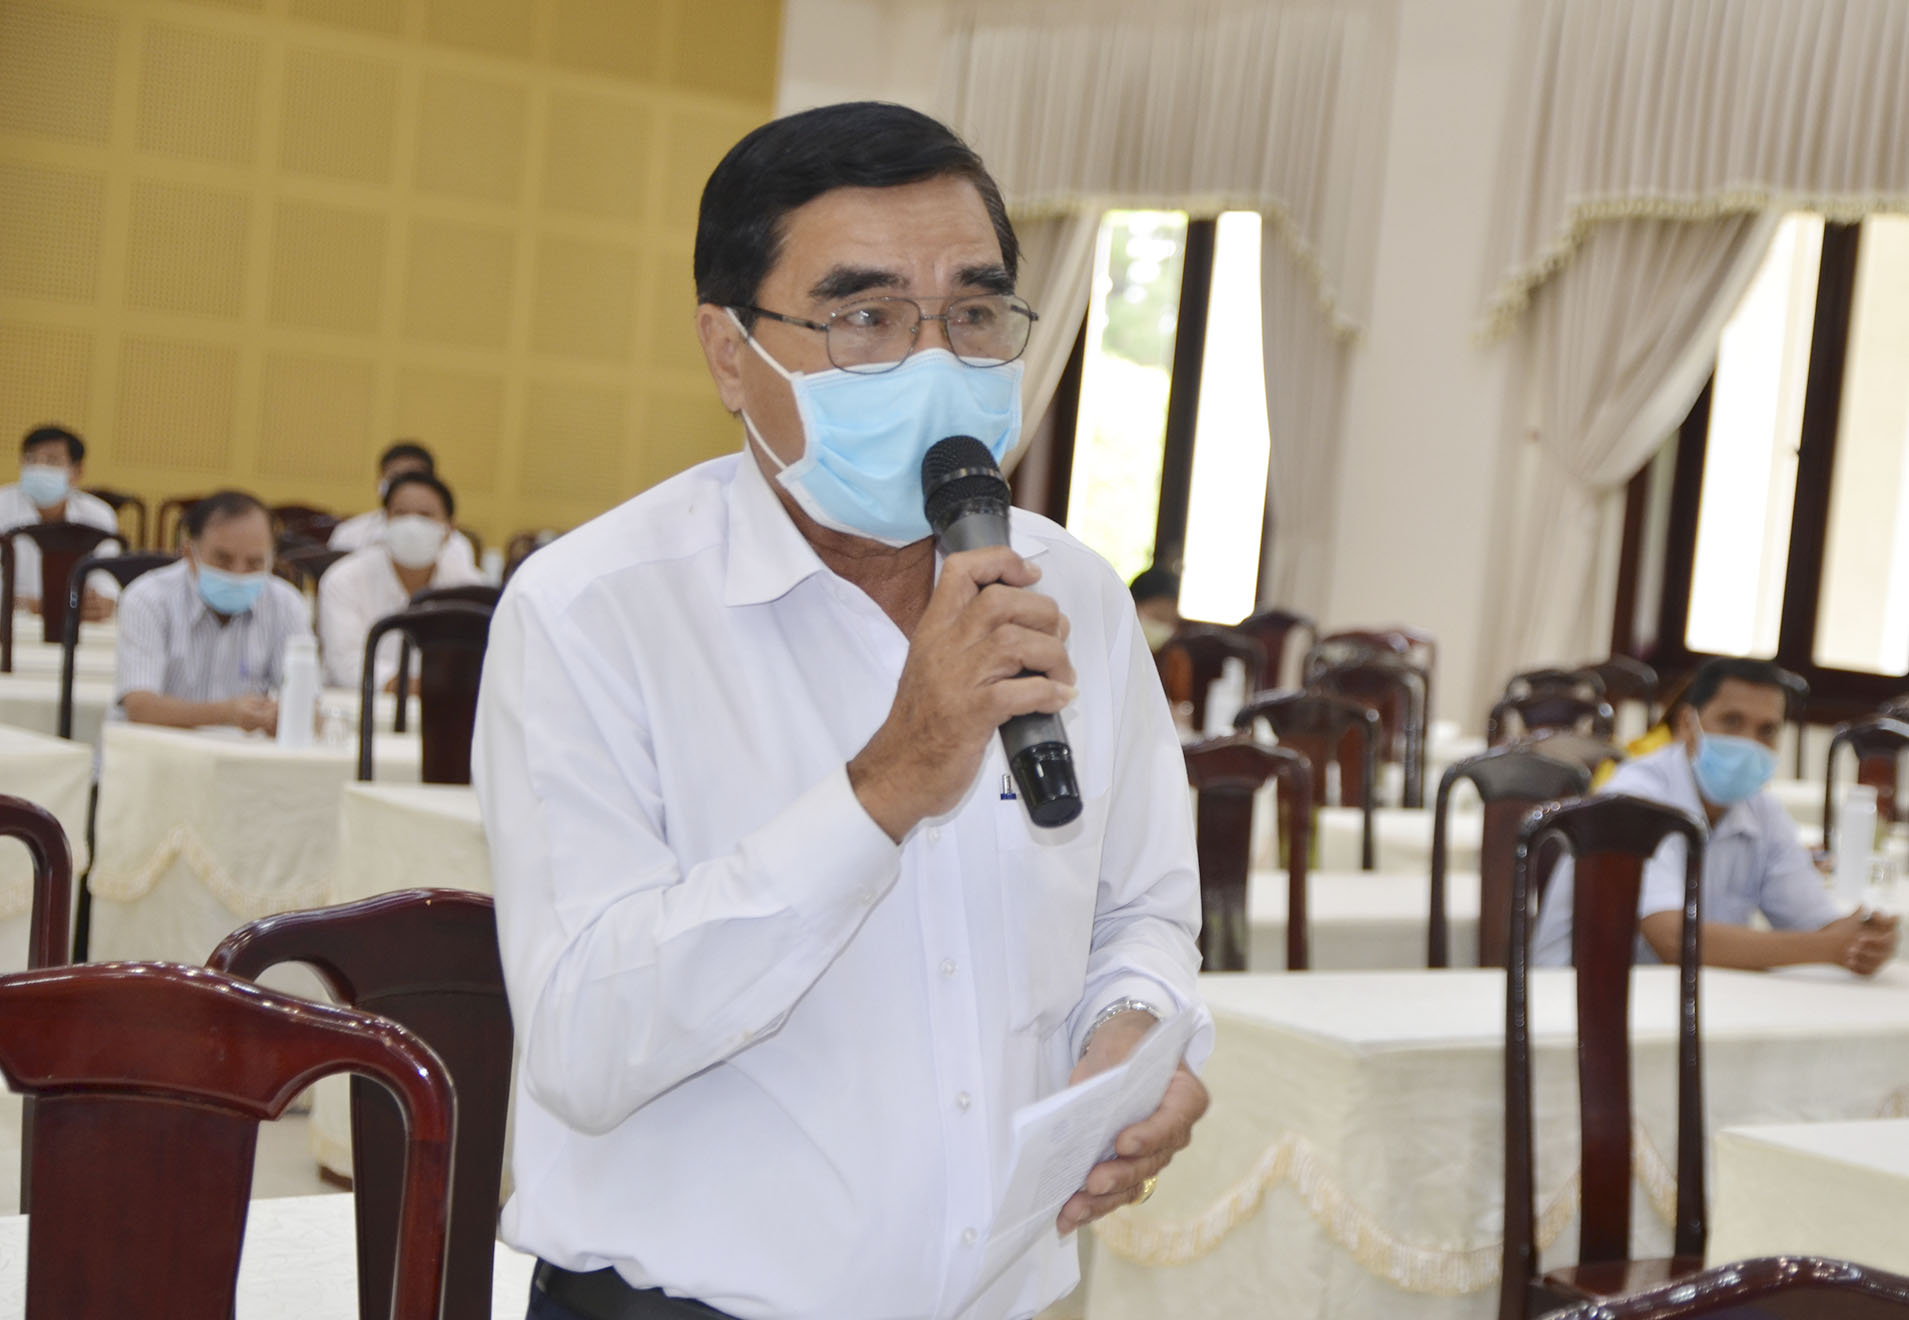 Cử tri Nguyễn Quang Sung, TT. Ngãi Giao, huyện Châu Đức mong muốn đại biểu HĐND tỉnh nhiệm kỳ 2021-2026 có những quyết sách mạnh mẽ, lãnh đạo huyện ngày càng phát triển.